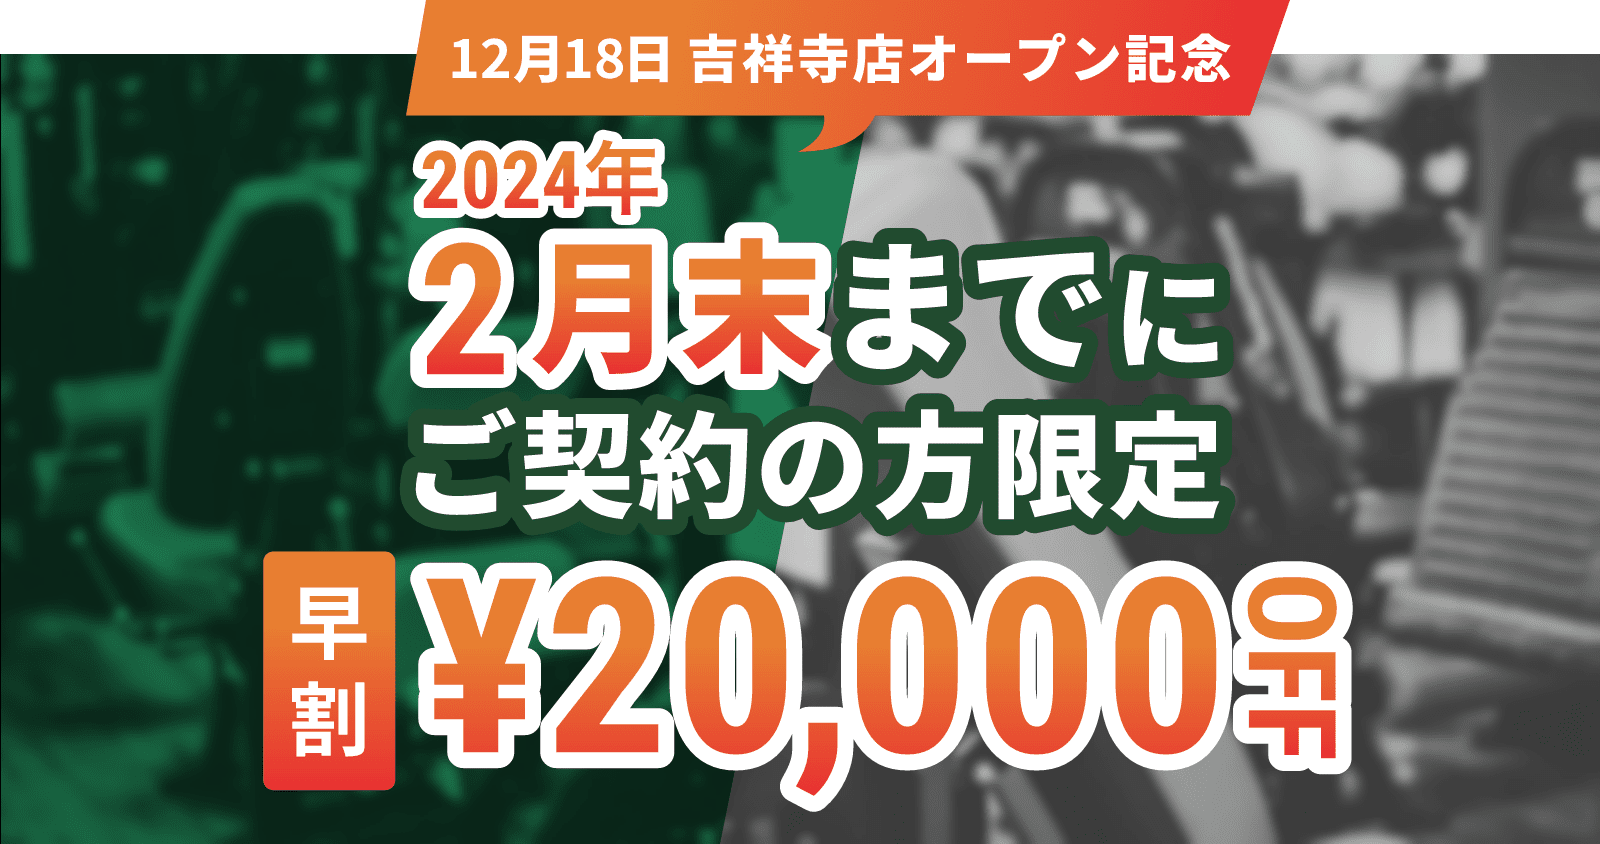 12月18日吉祥寺店オープン記念 2024年2月末までにご契約の方限定早割20,000円OFF